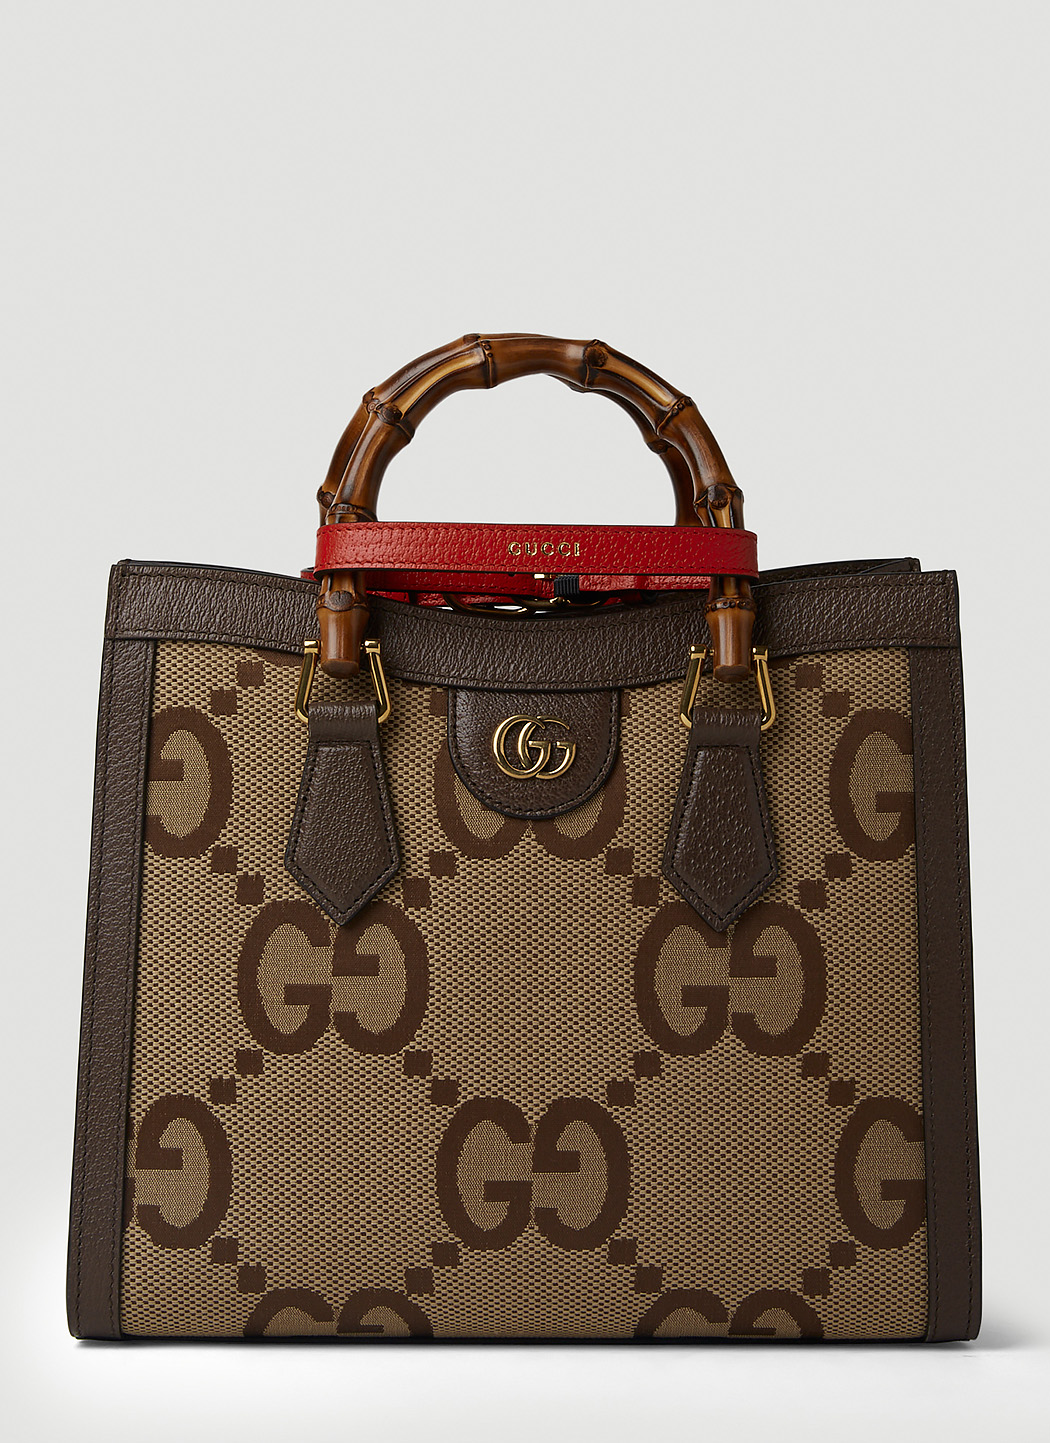 Gucci Jumbo GG Bags & Handbags - Women